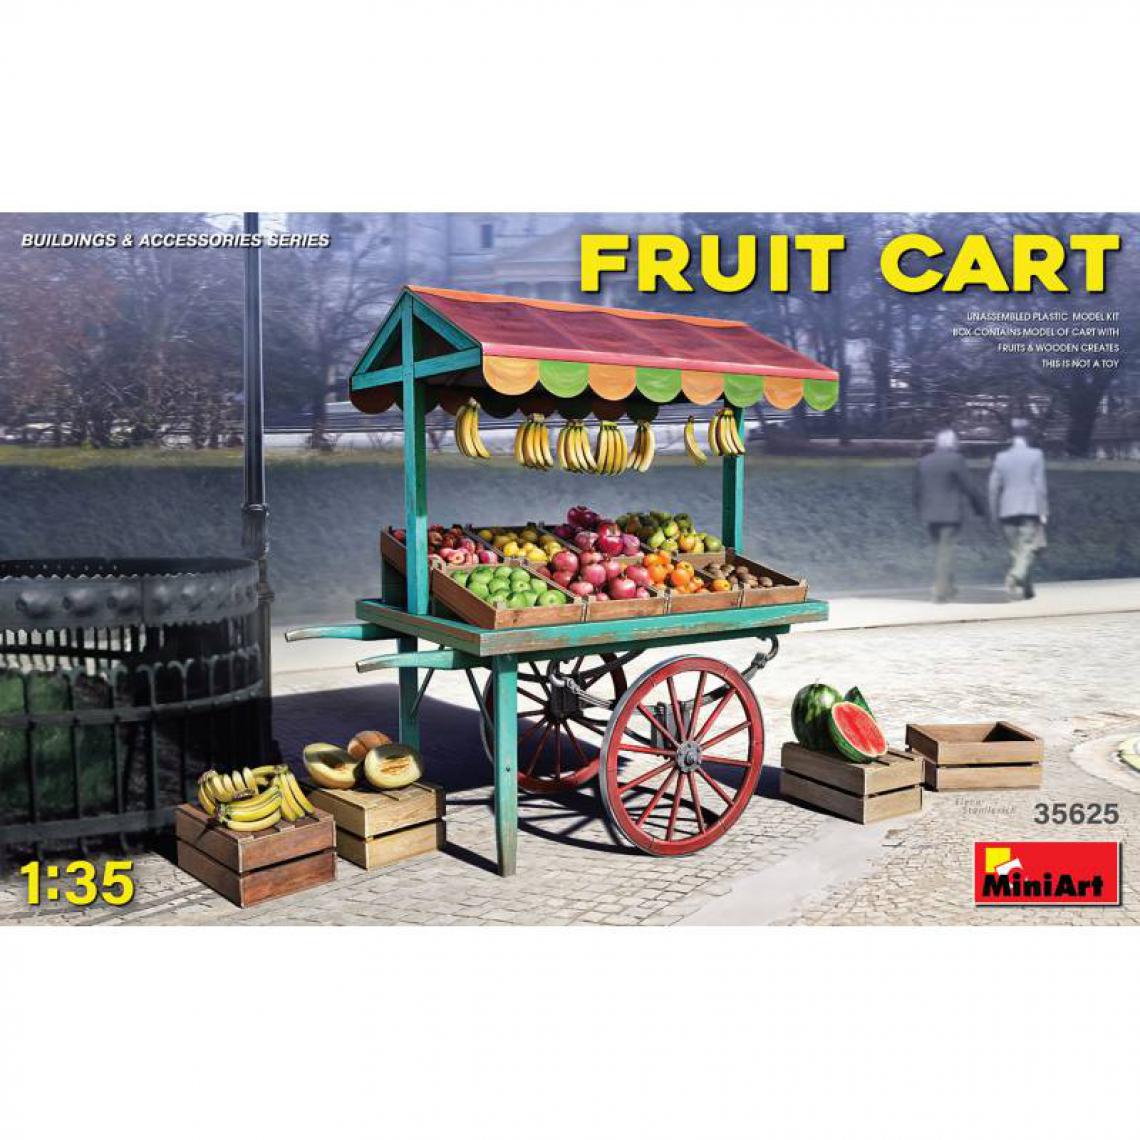 Mini Art - Fruit Cart - Décor Modélisme - Accessoires maquettes